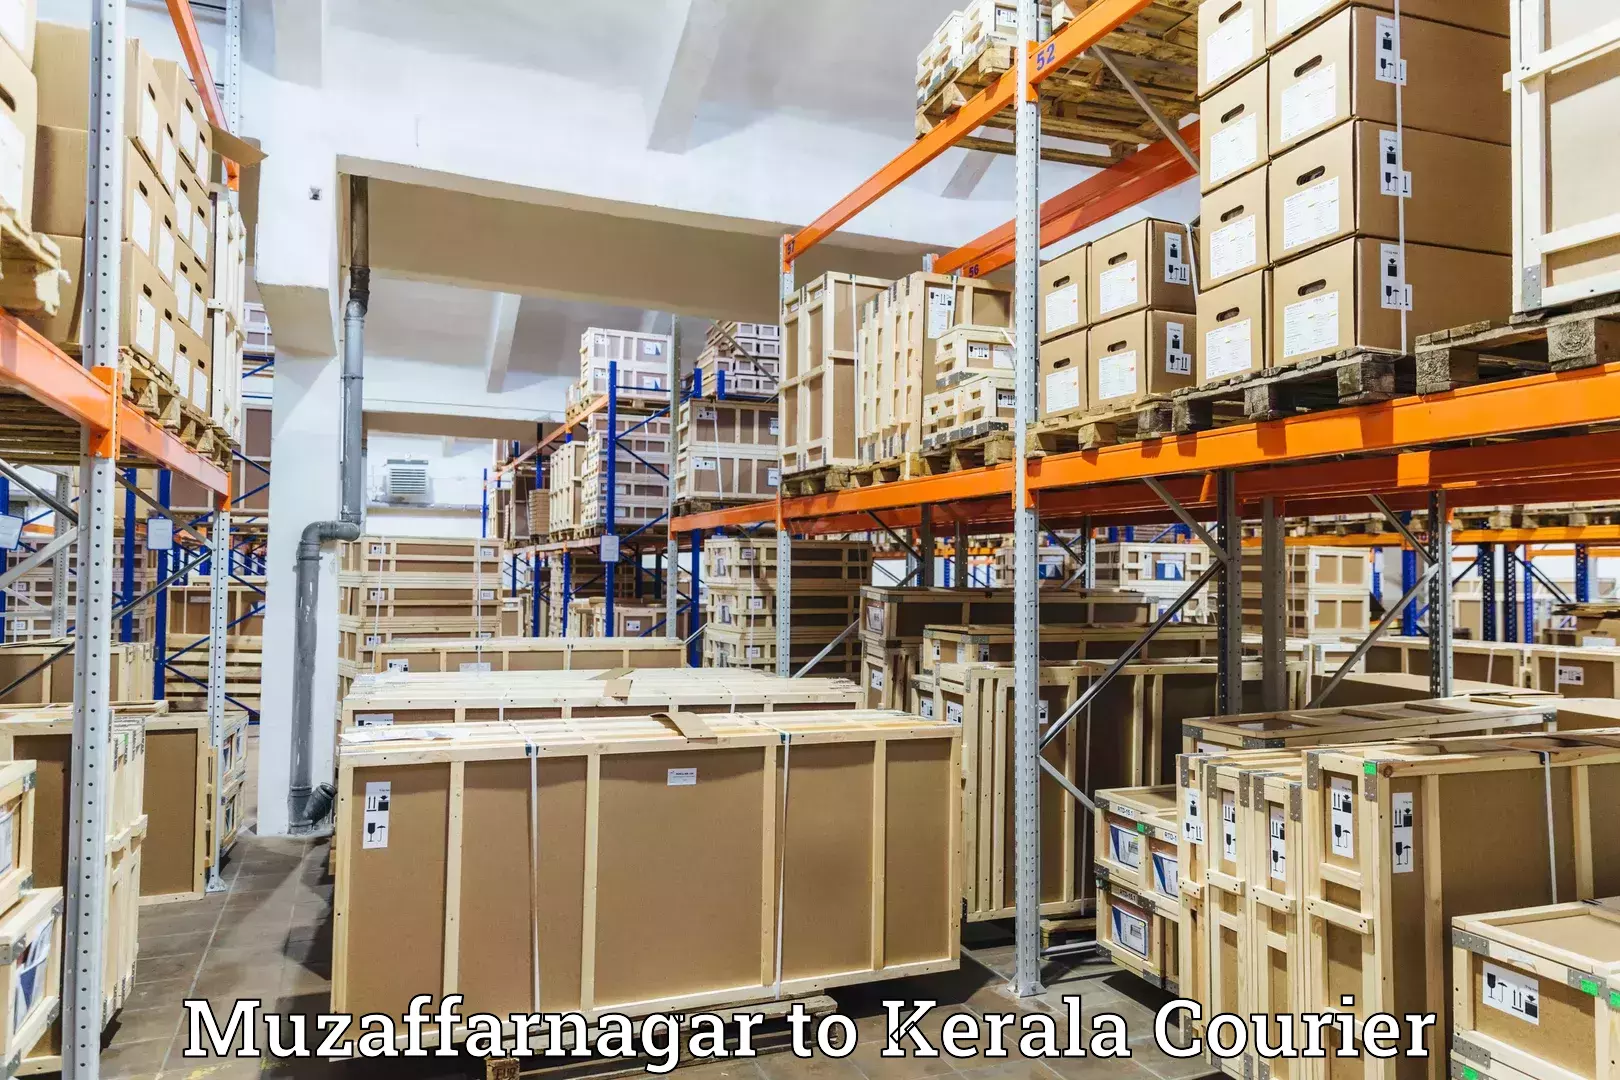 Advanced shipping network Muzaffarnagar to Mahatma Gandhi University Kottayam